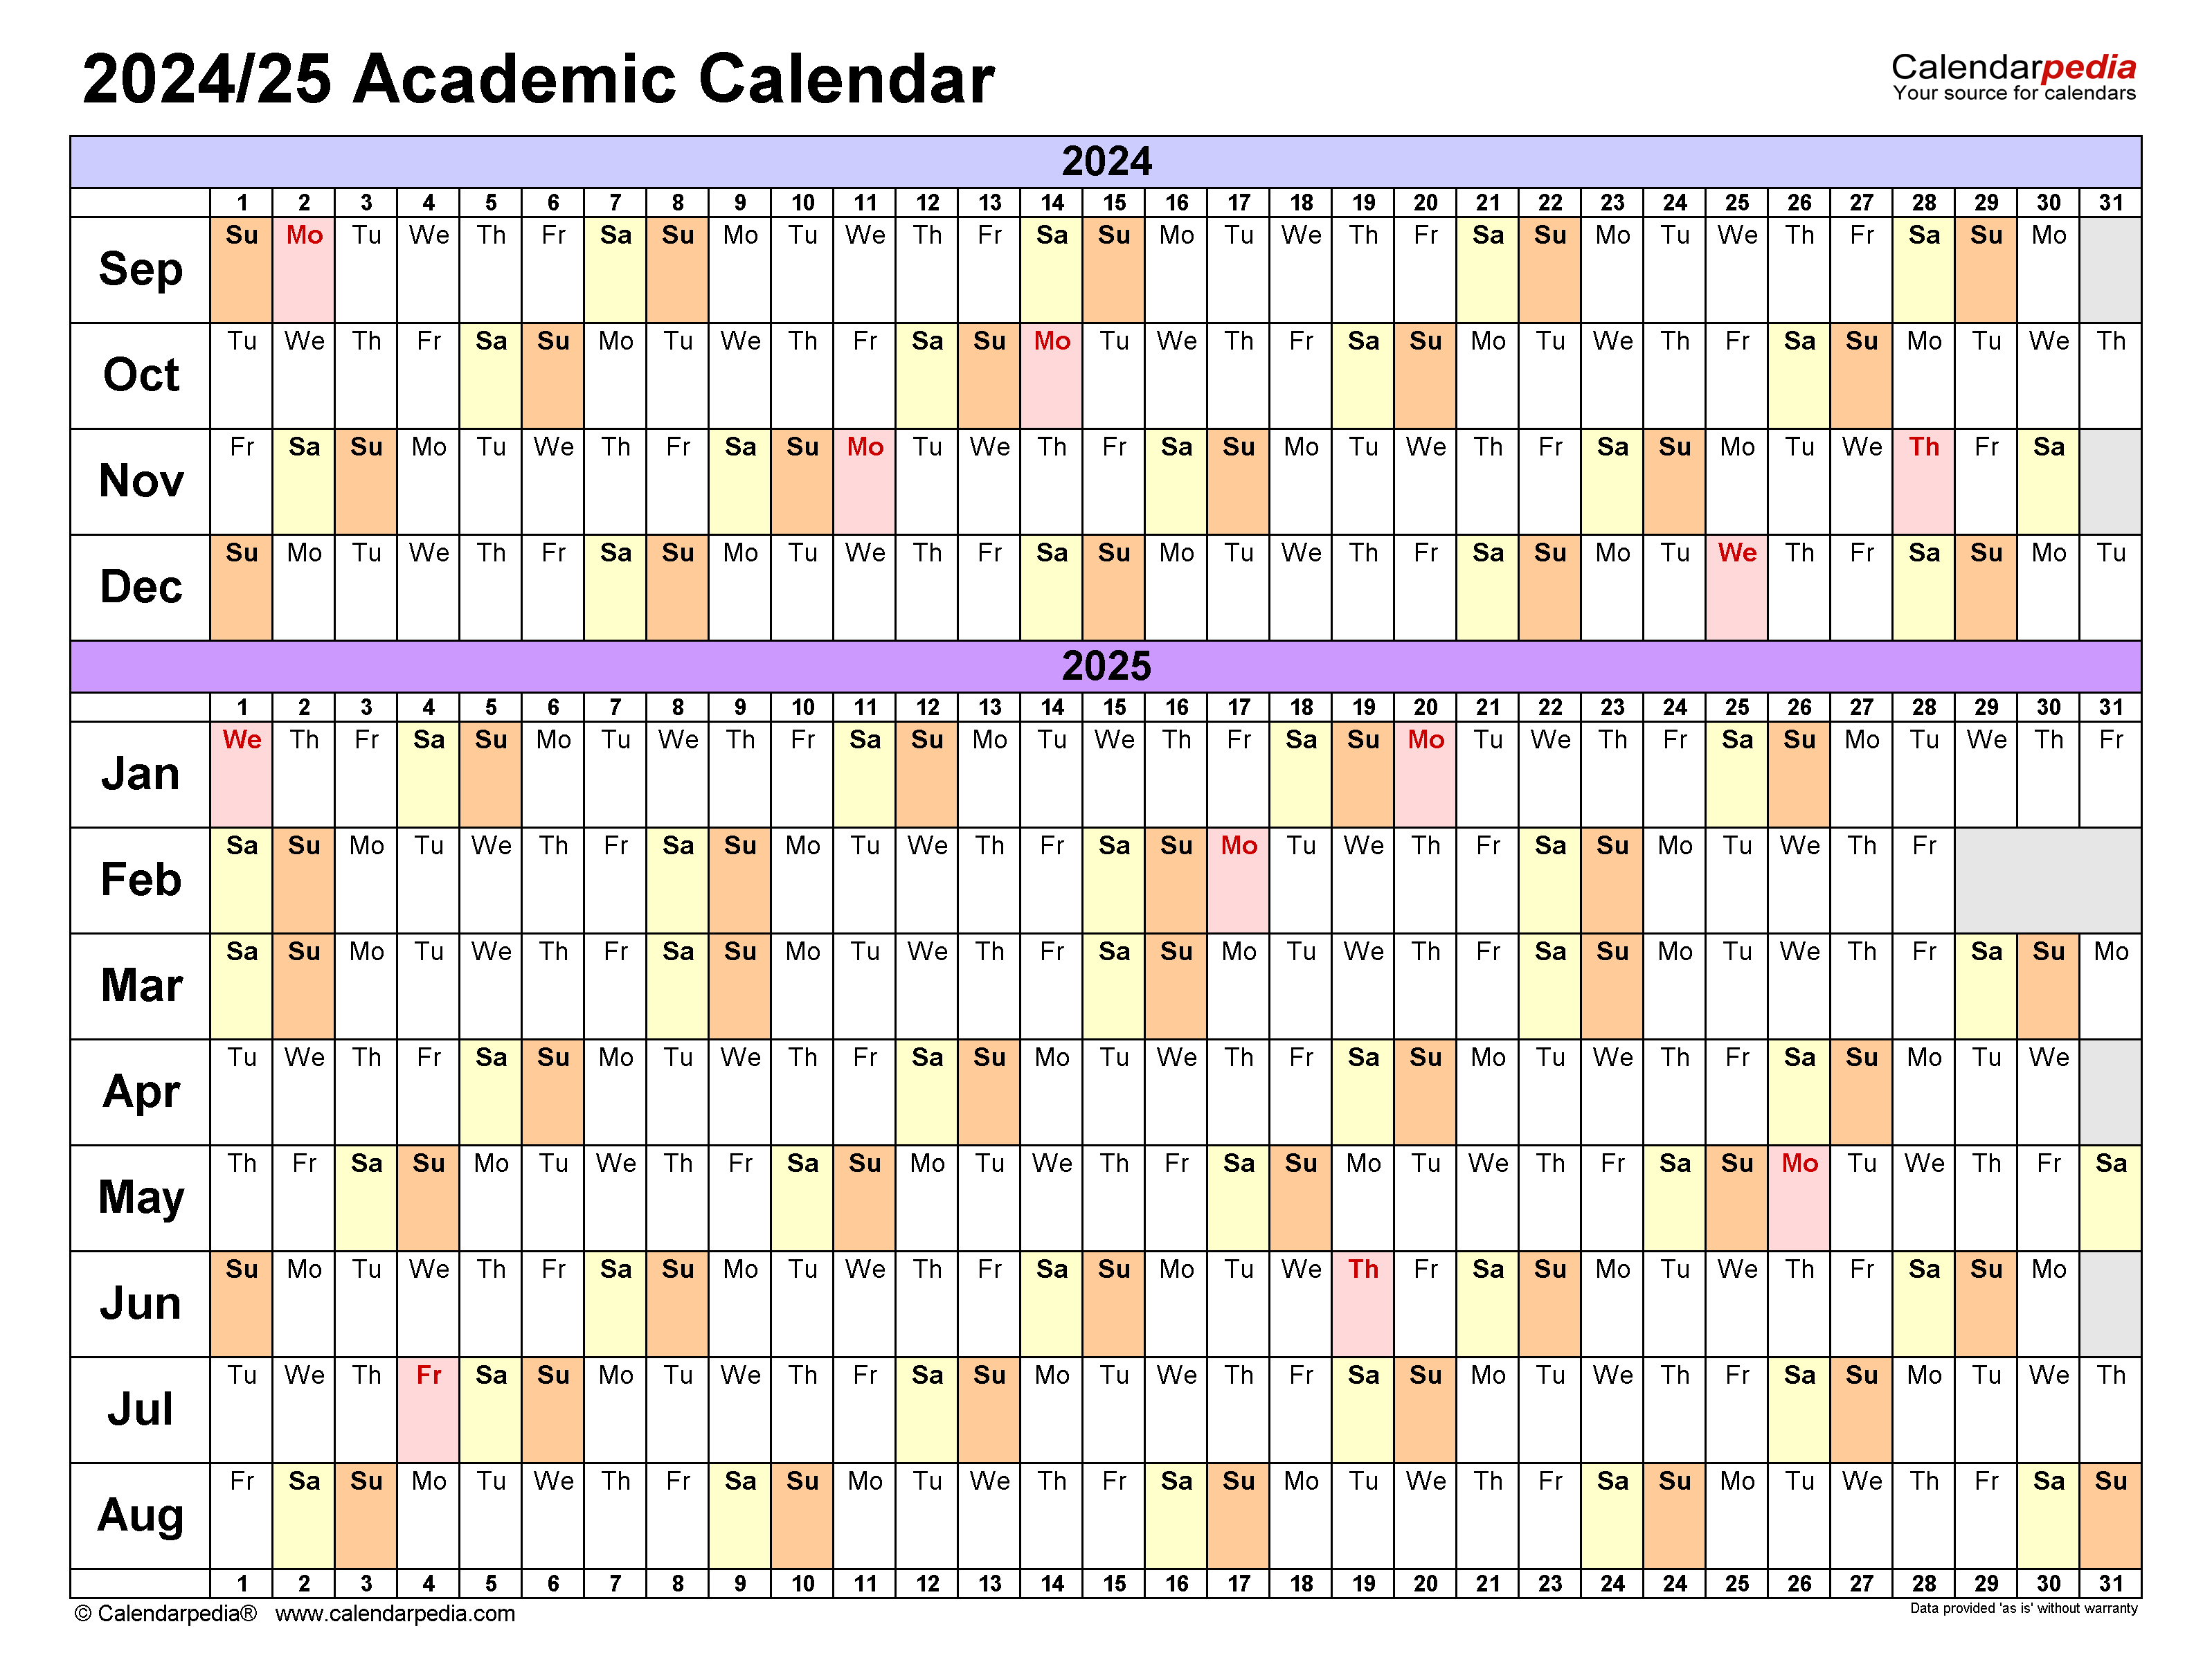 Uiuc 2024 Fall Calendar Of Events Schedule February 2024 Calendar